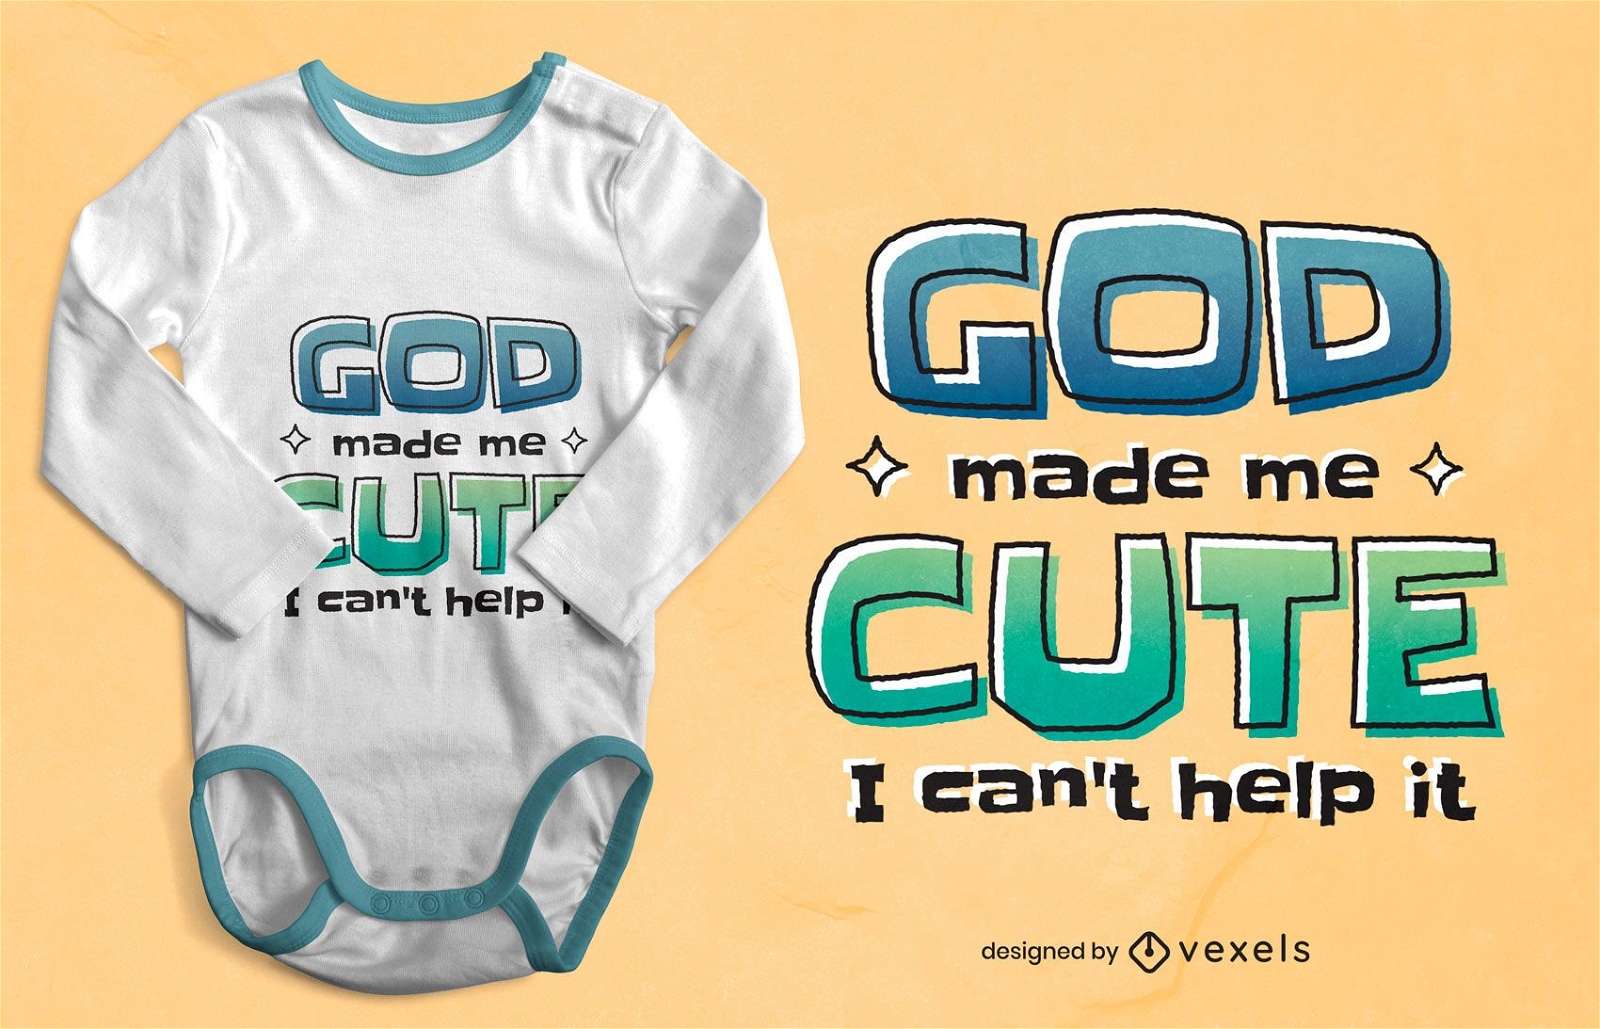 God made me cute t-shirt design